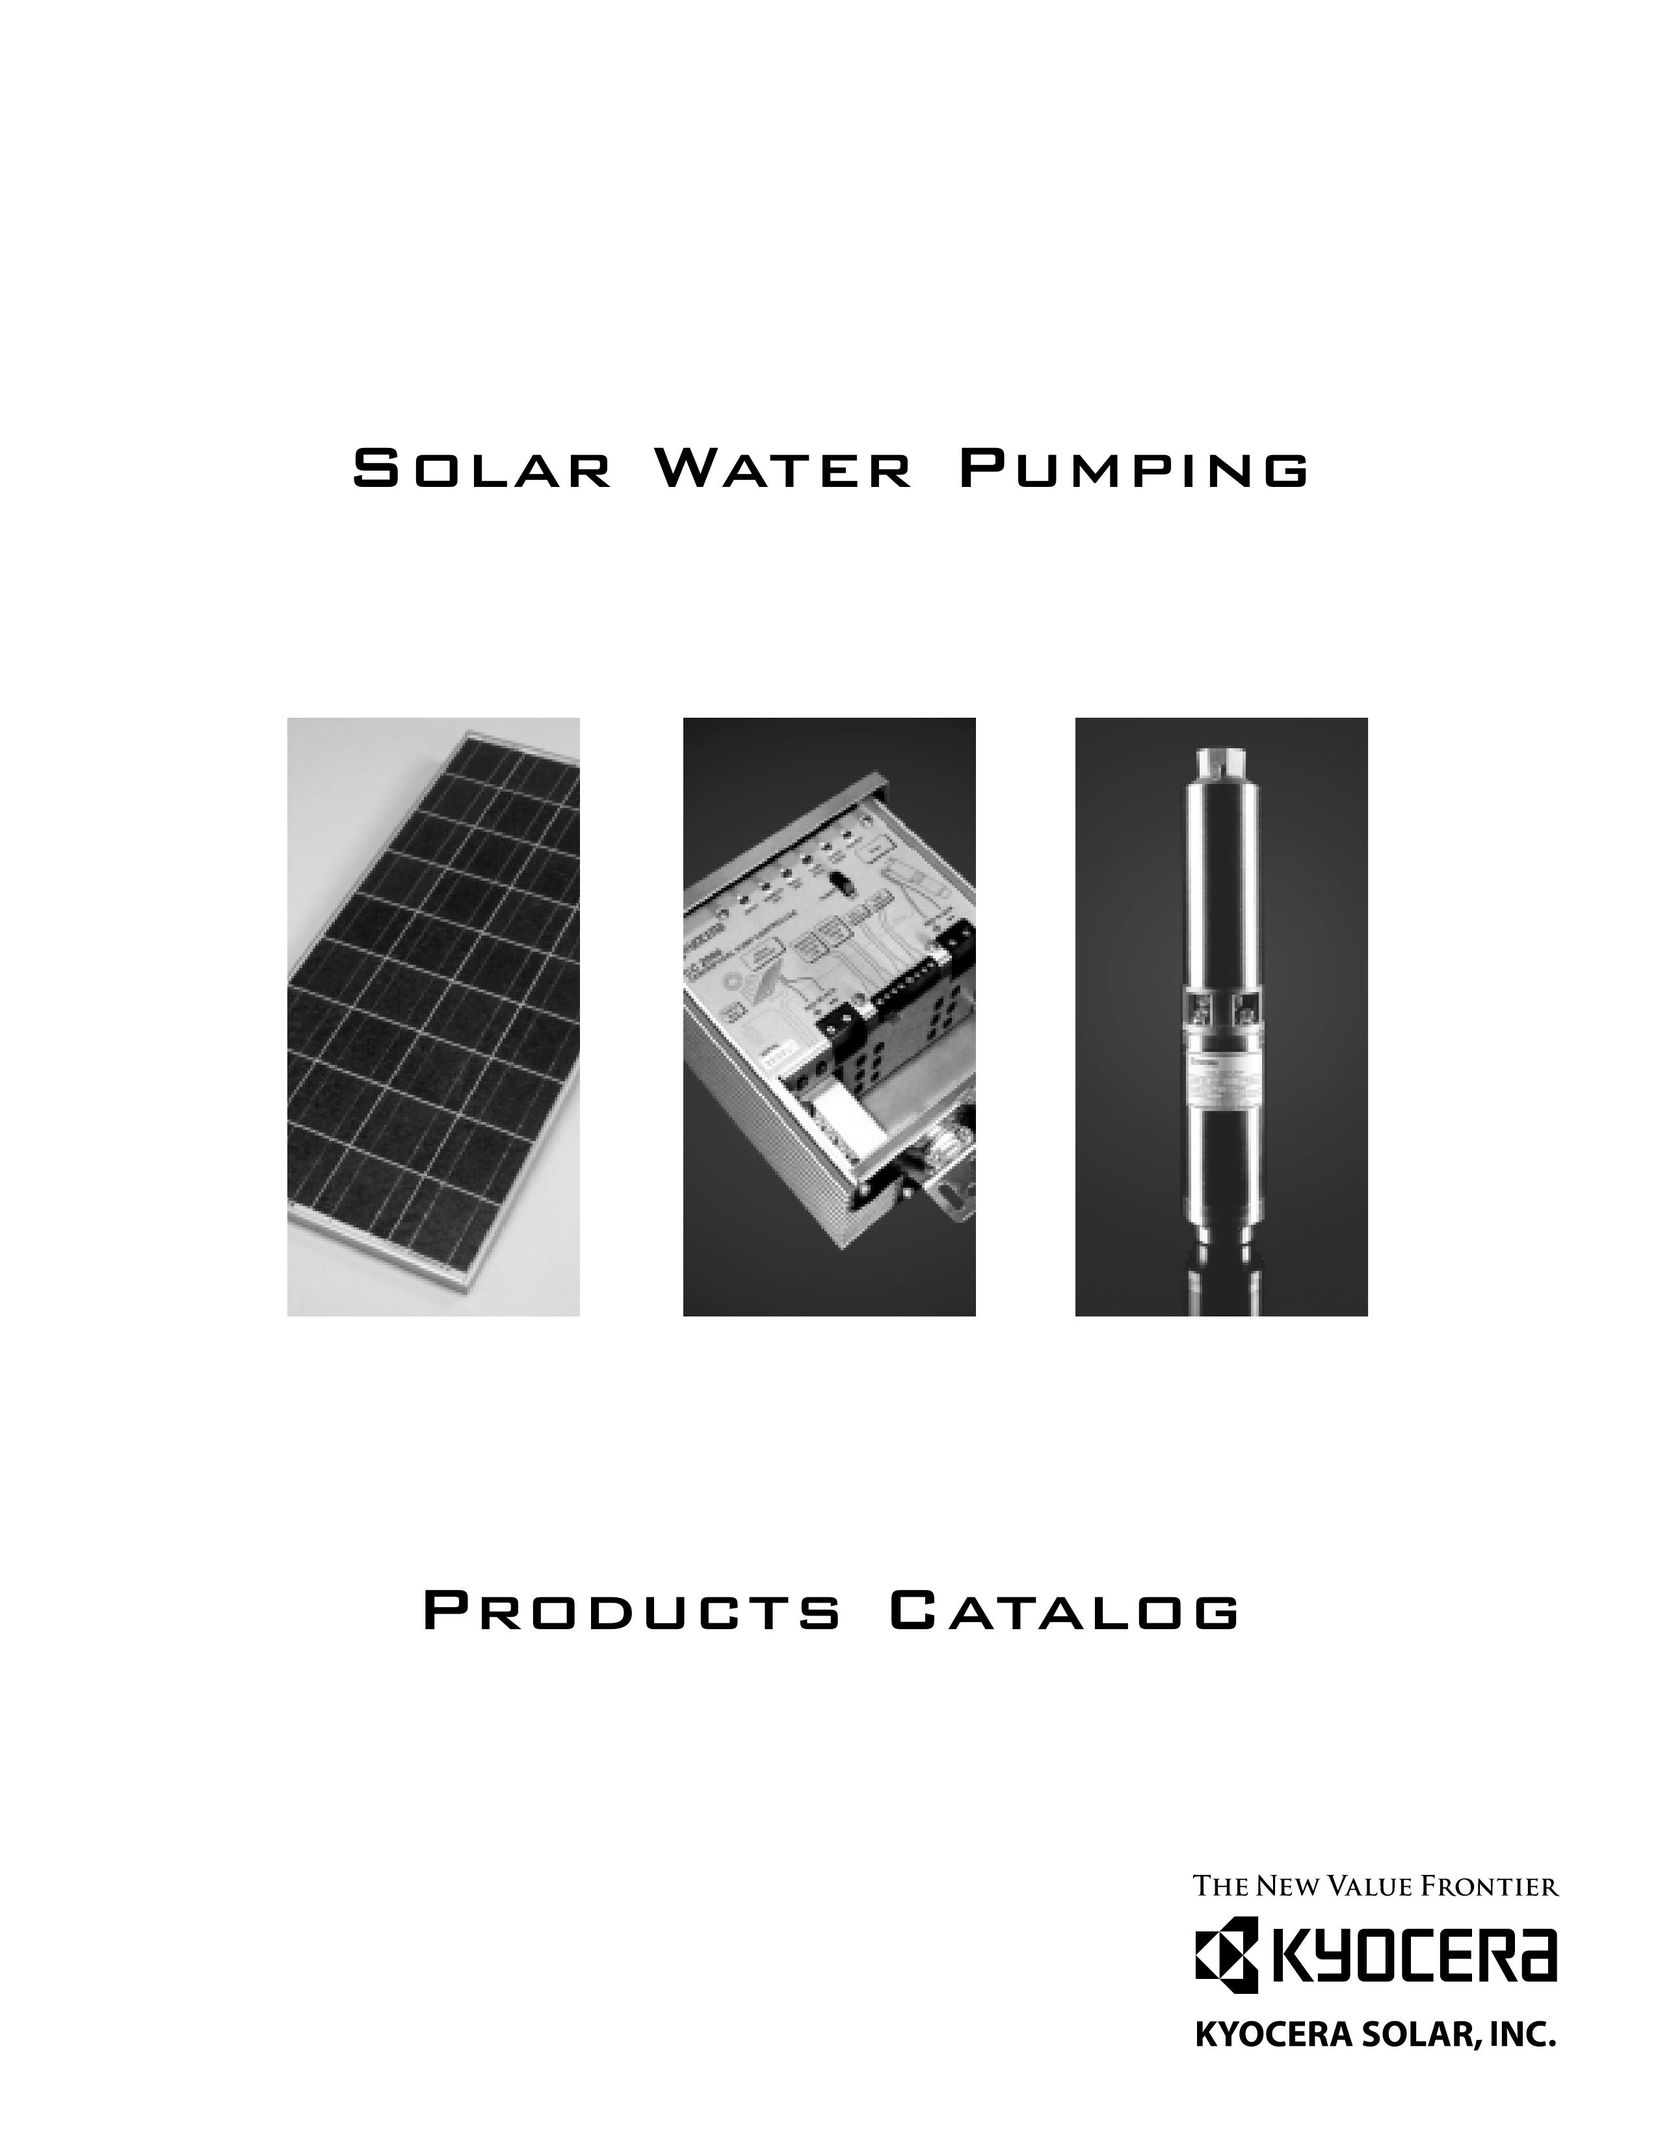 Kyocera SD 6-35 Water Pump User Manual